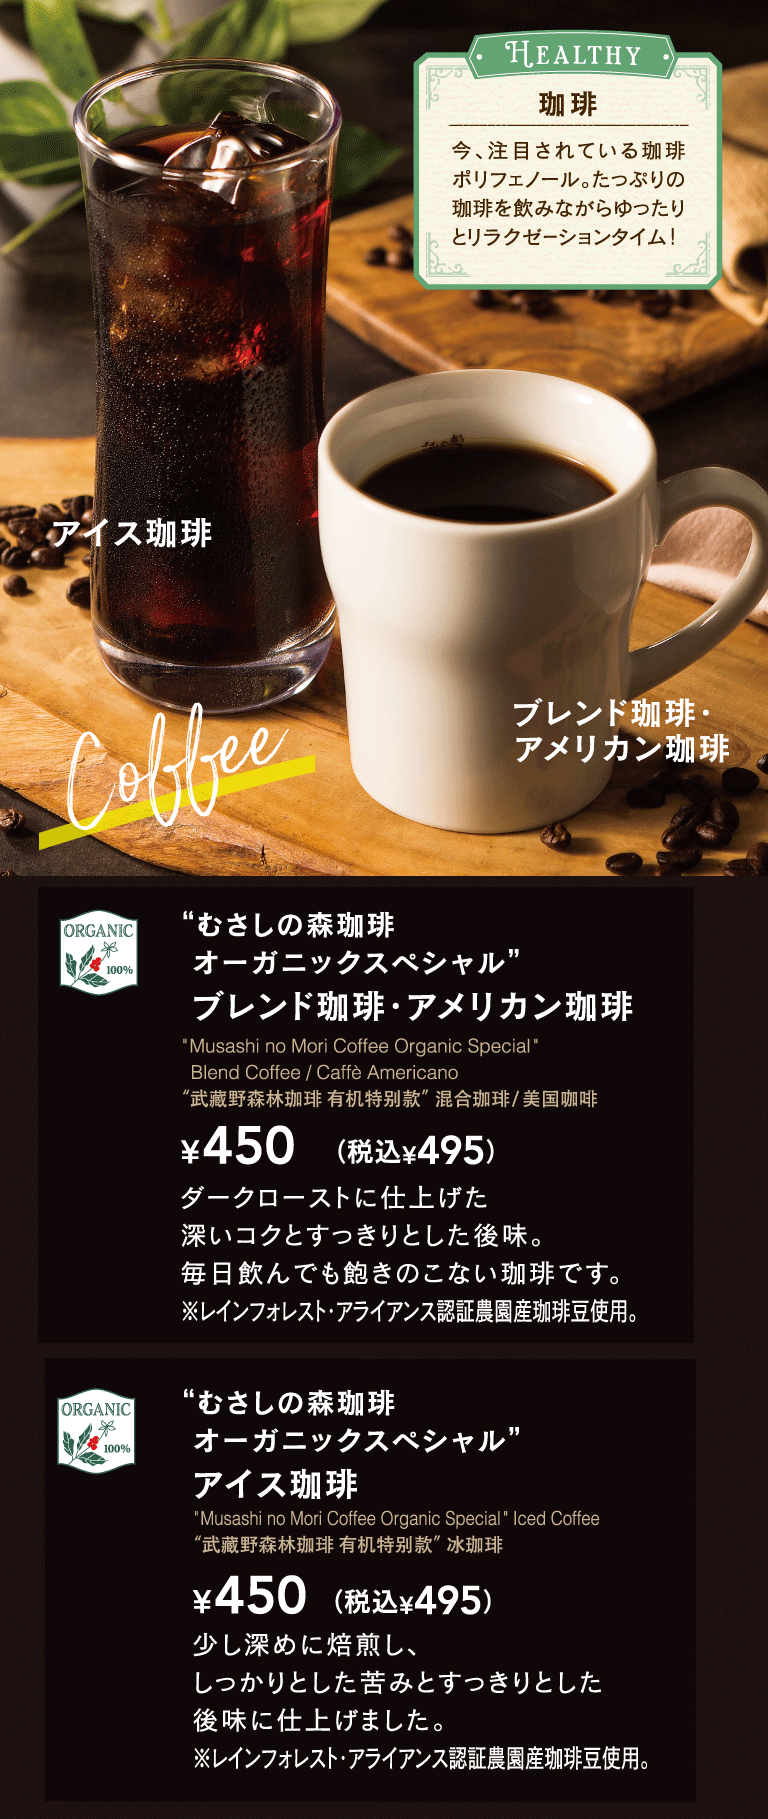 무사시노모리 커피 (むさしの森珈琲)유기농 스페셜 블랜드 커피 미국 커피 아이스 커피